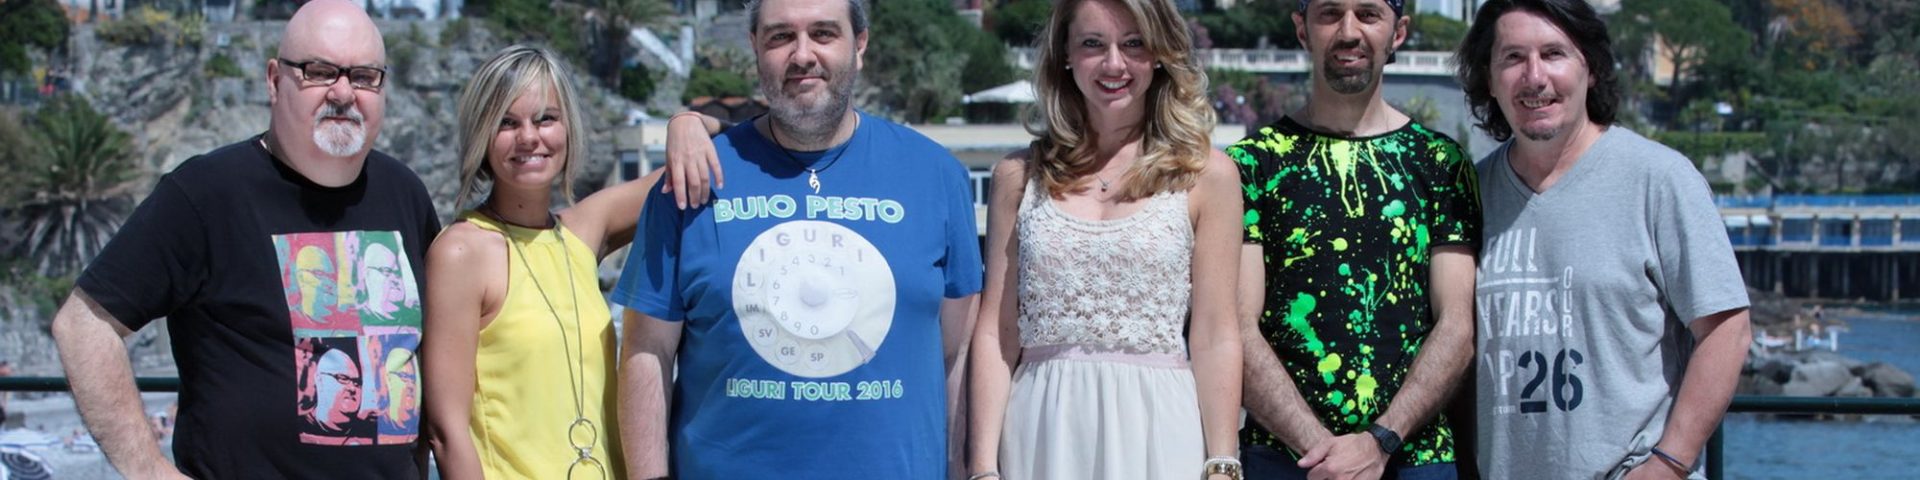 I Buio Pesto presentano “Giovane Vecchia Italia” – Video Intervista